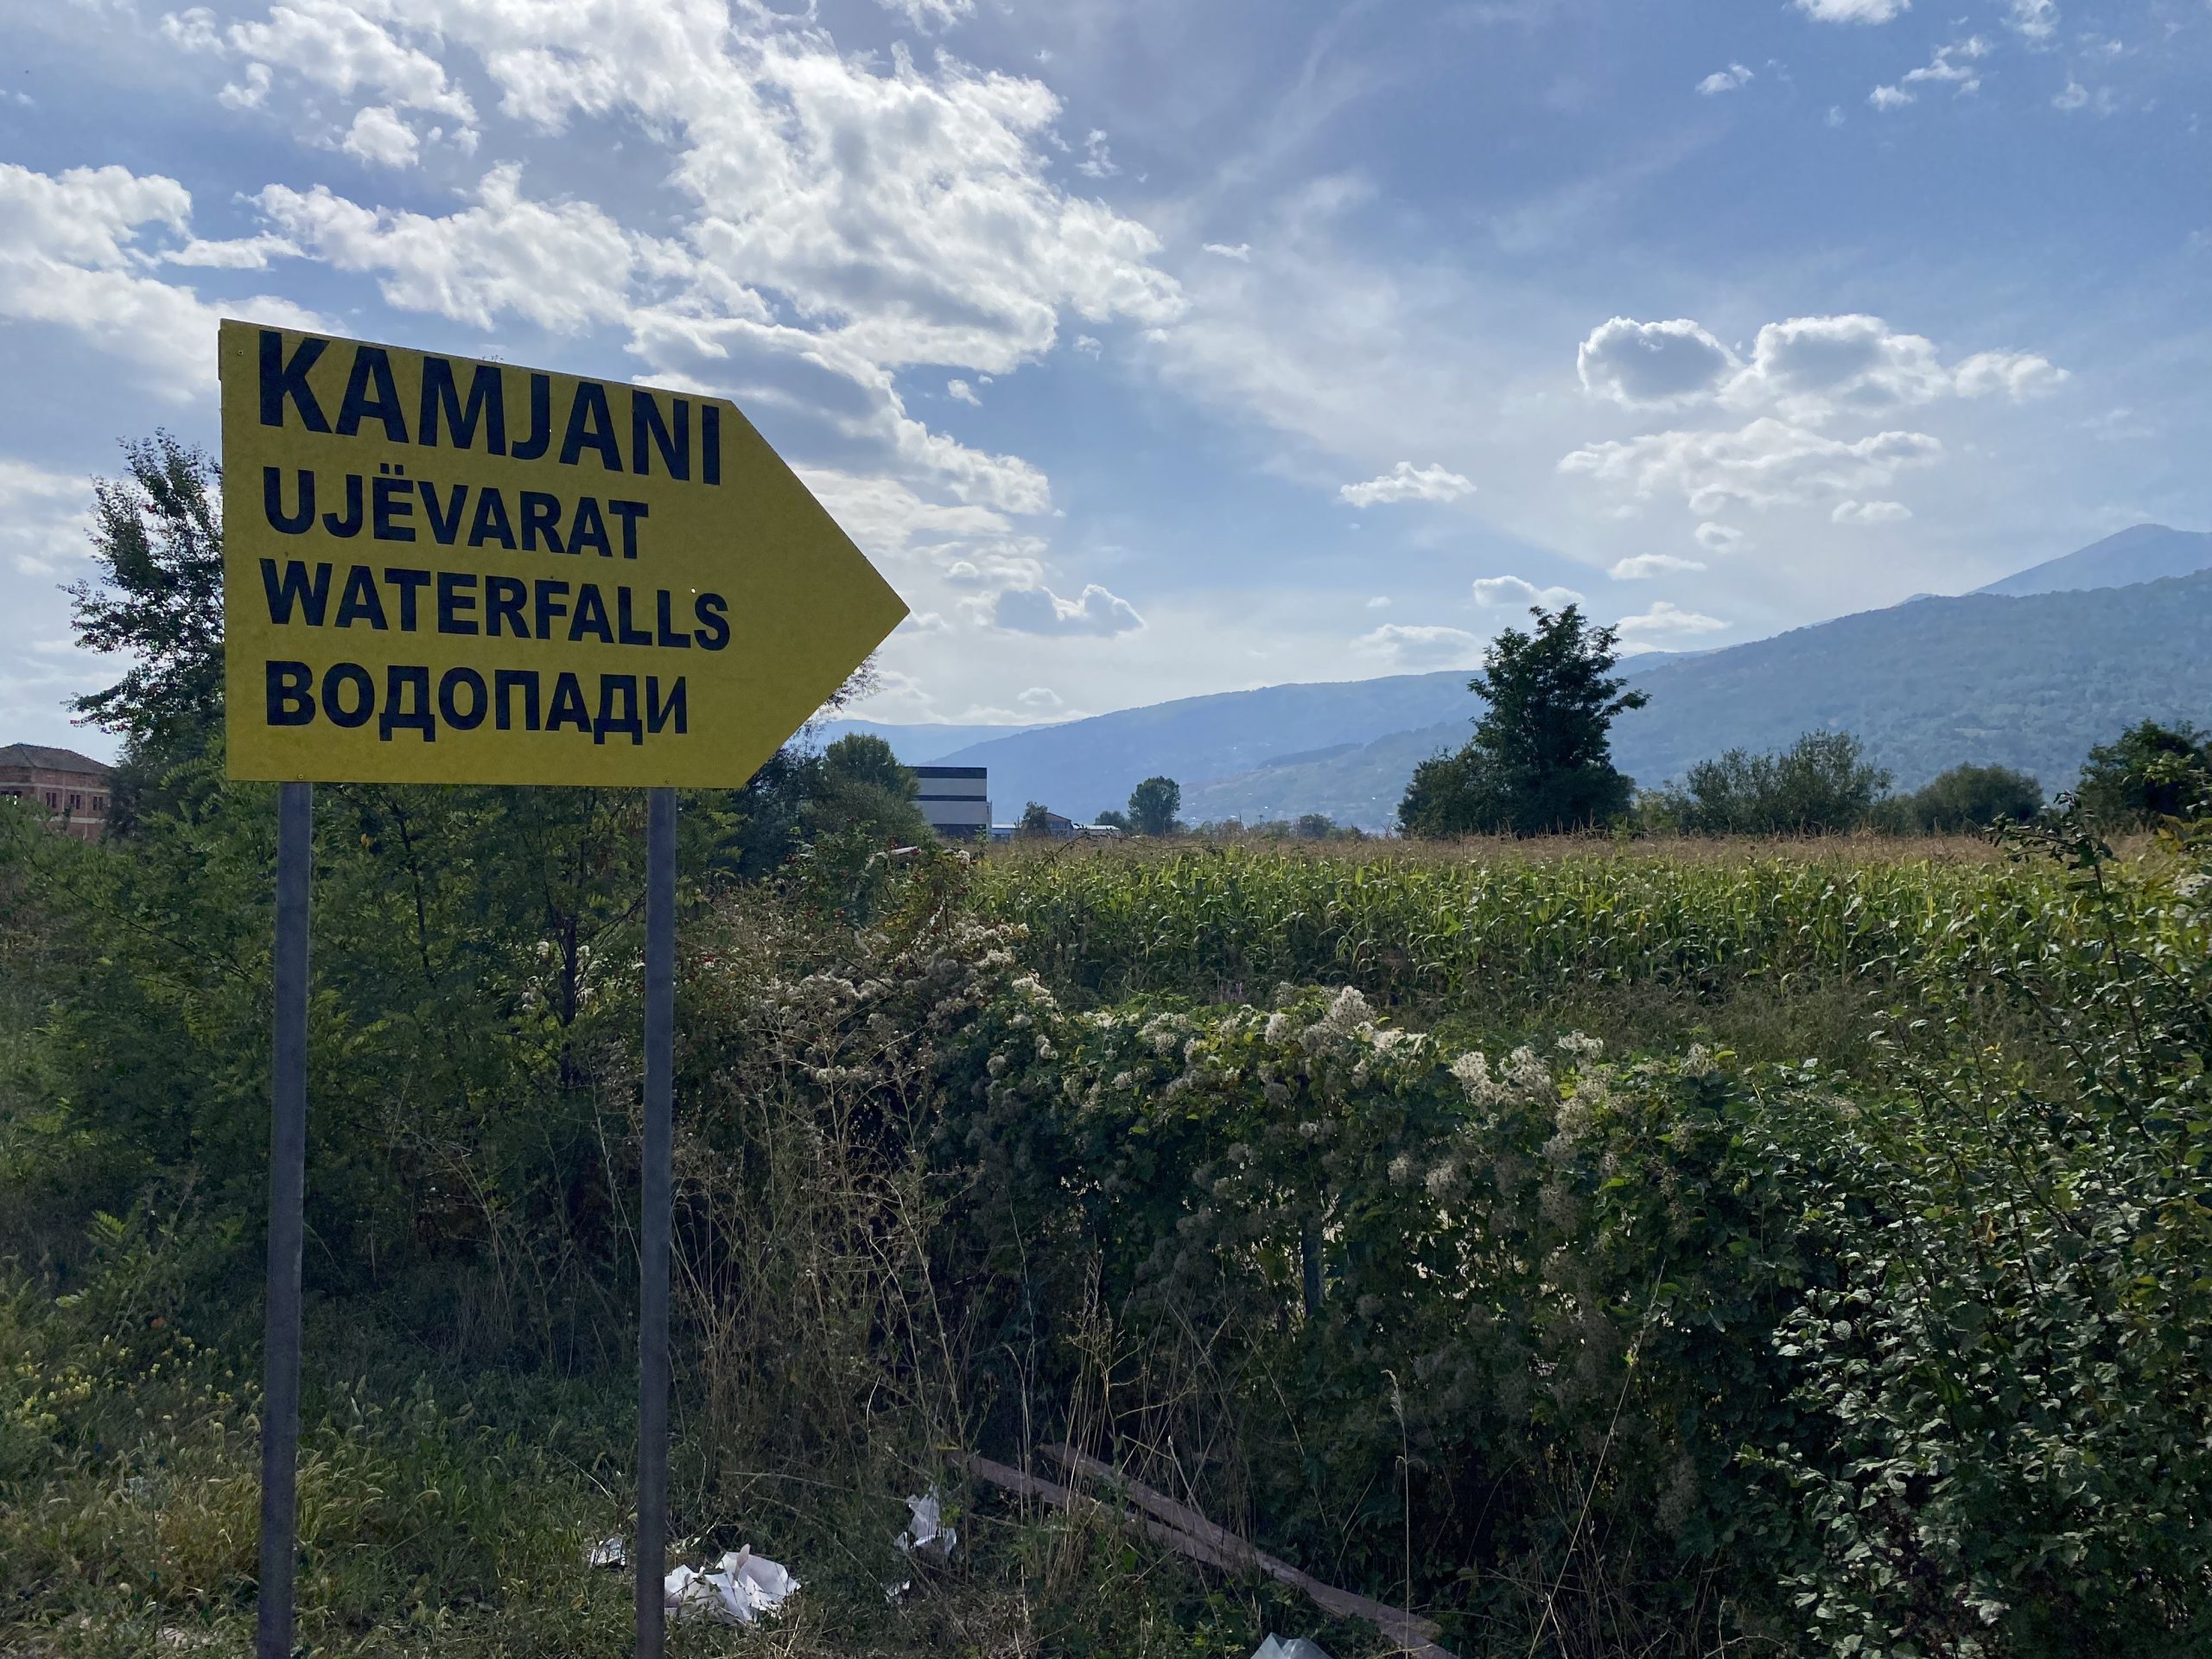 Vendosja e tabelave të informacionit nga fshati Kamjan deri tek ujëvarat